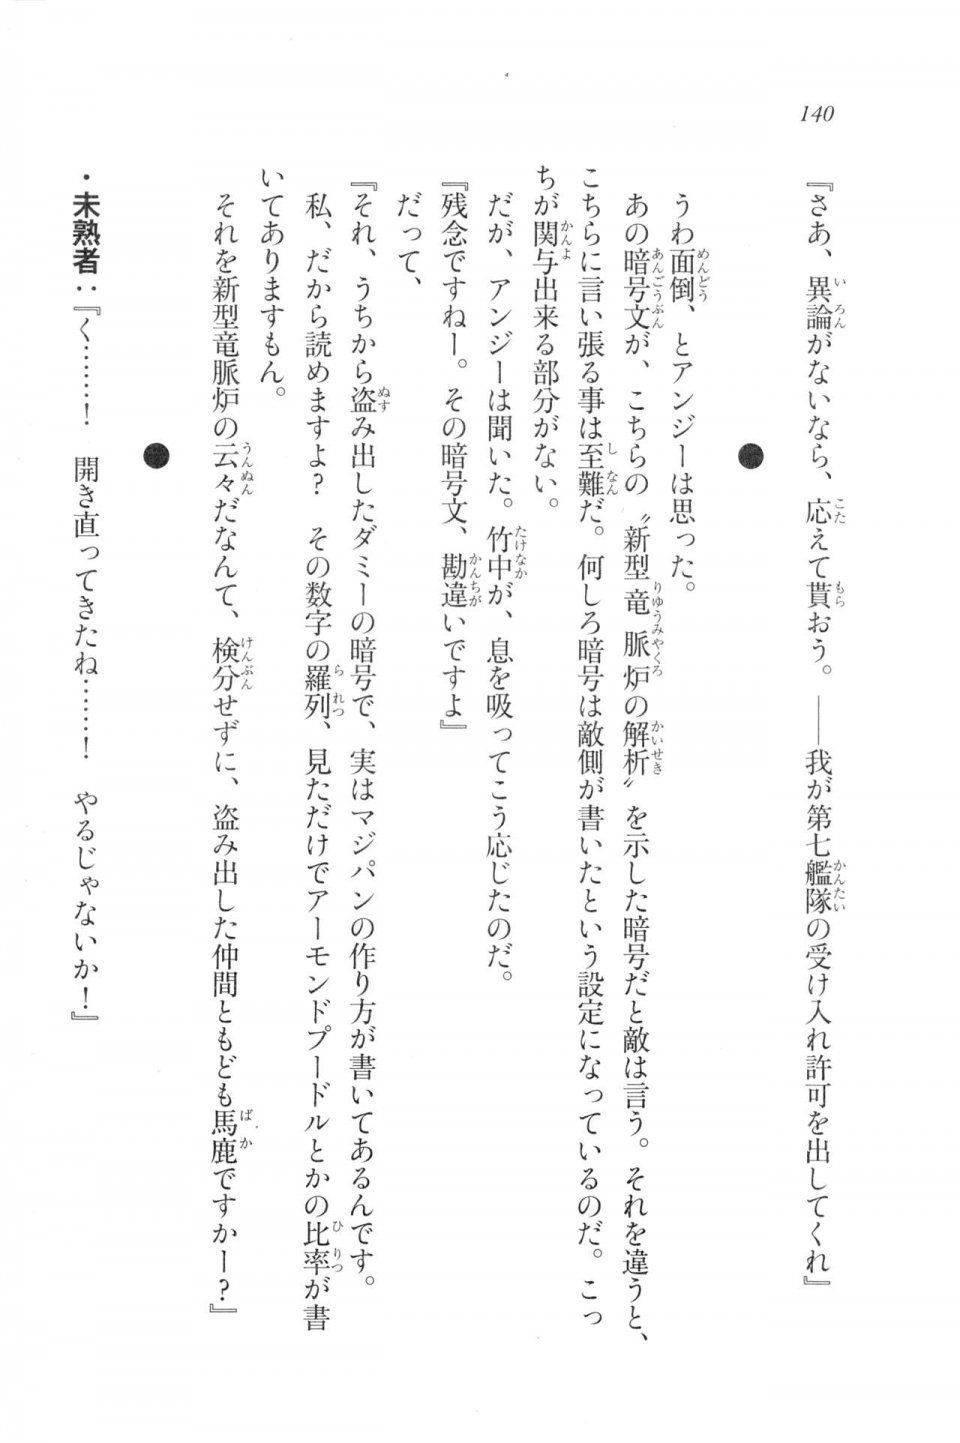 Kyoukai Senjou no Horizon LN Vol 20(8B) - Photo #140